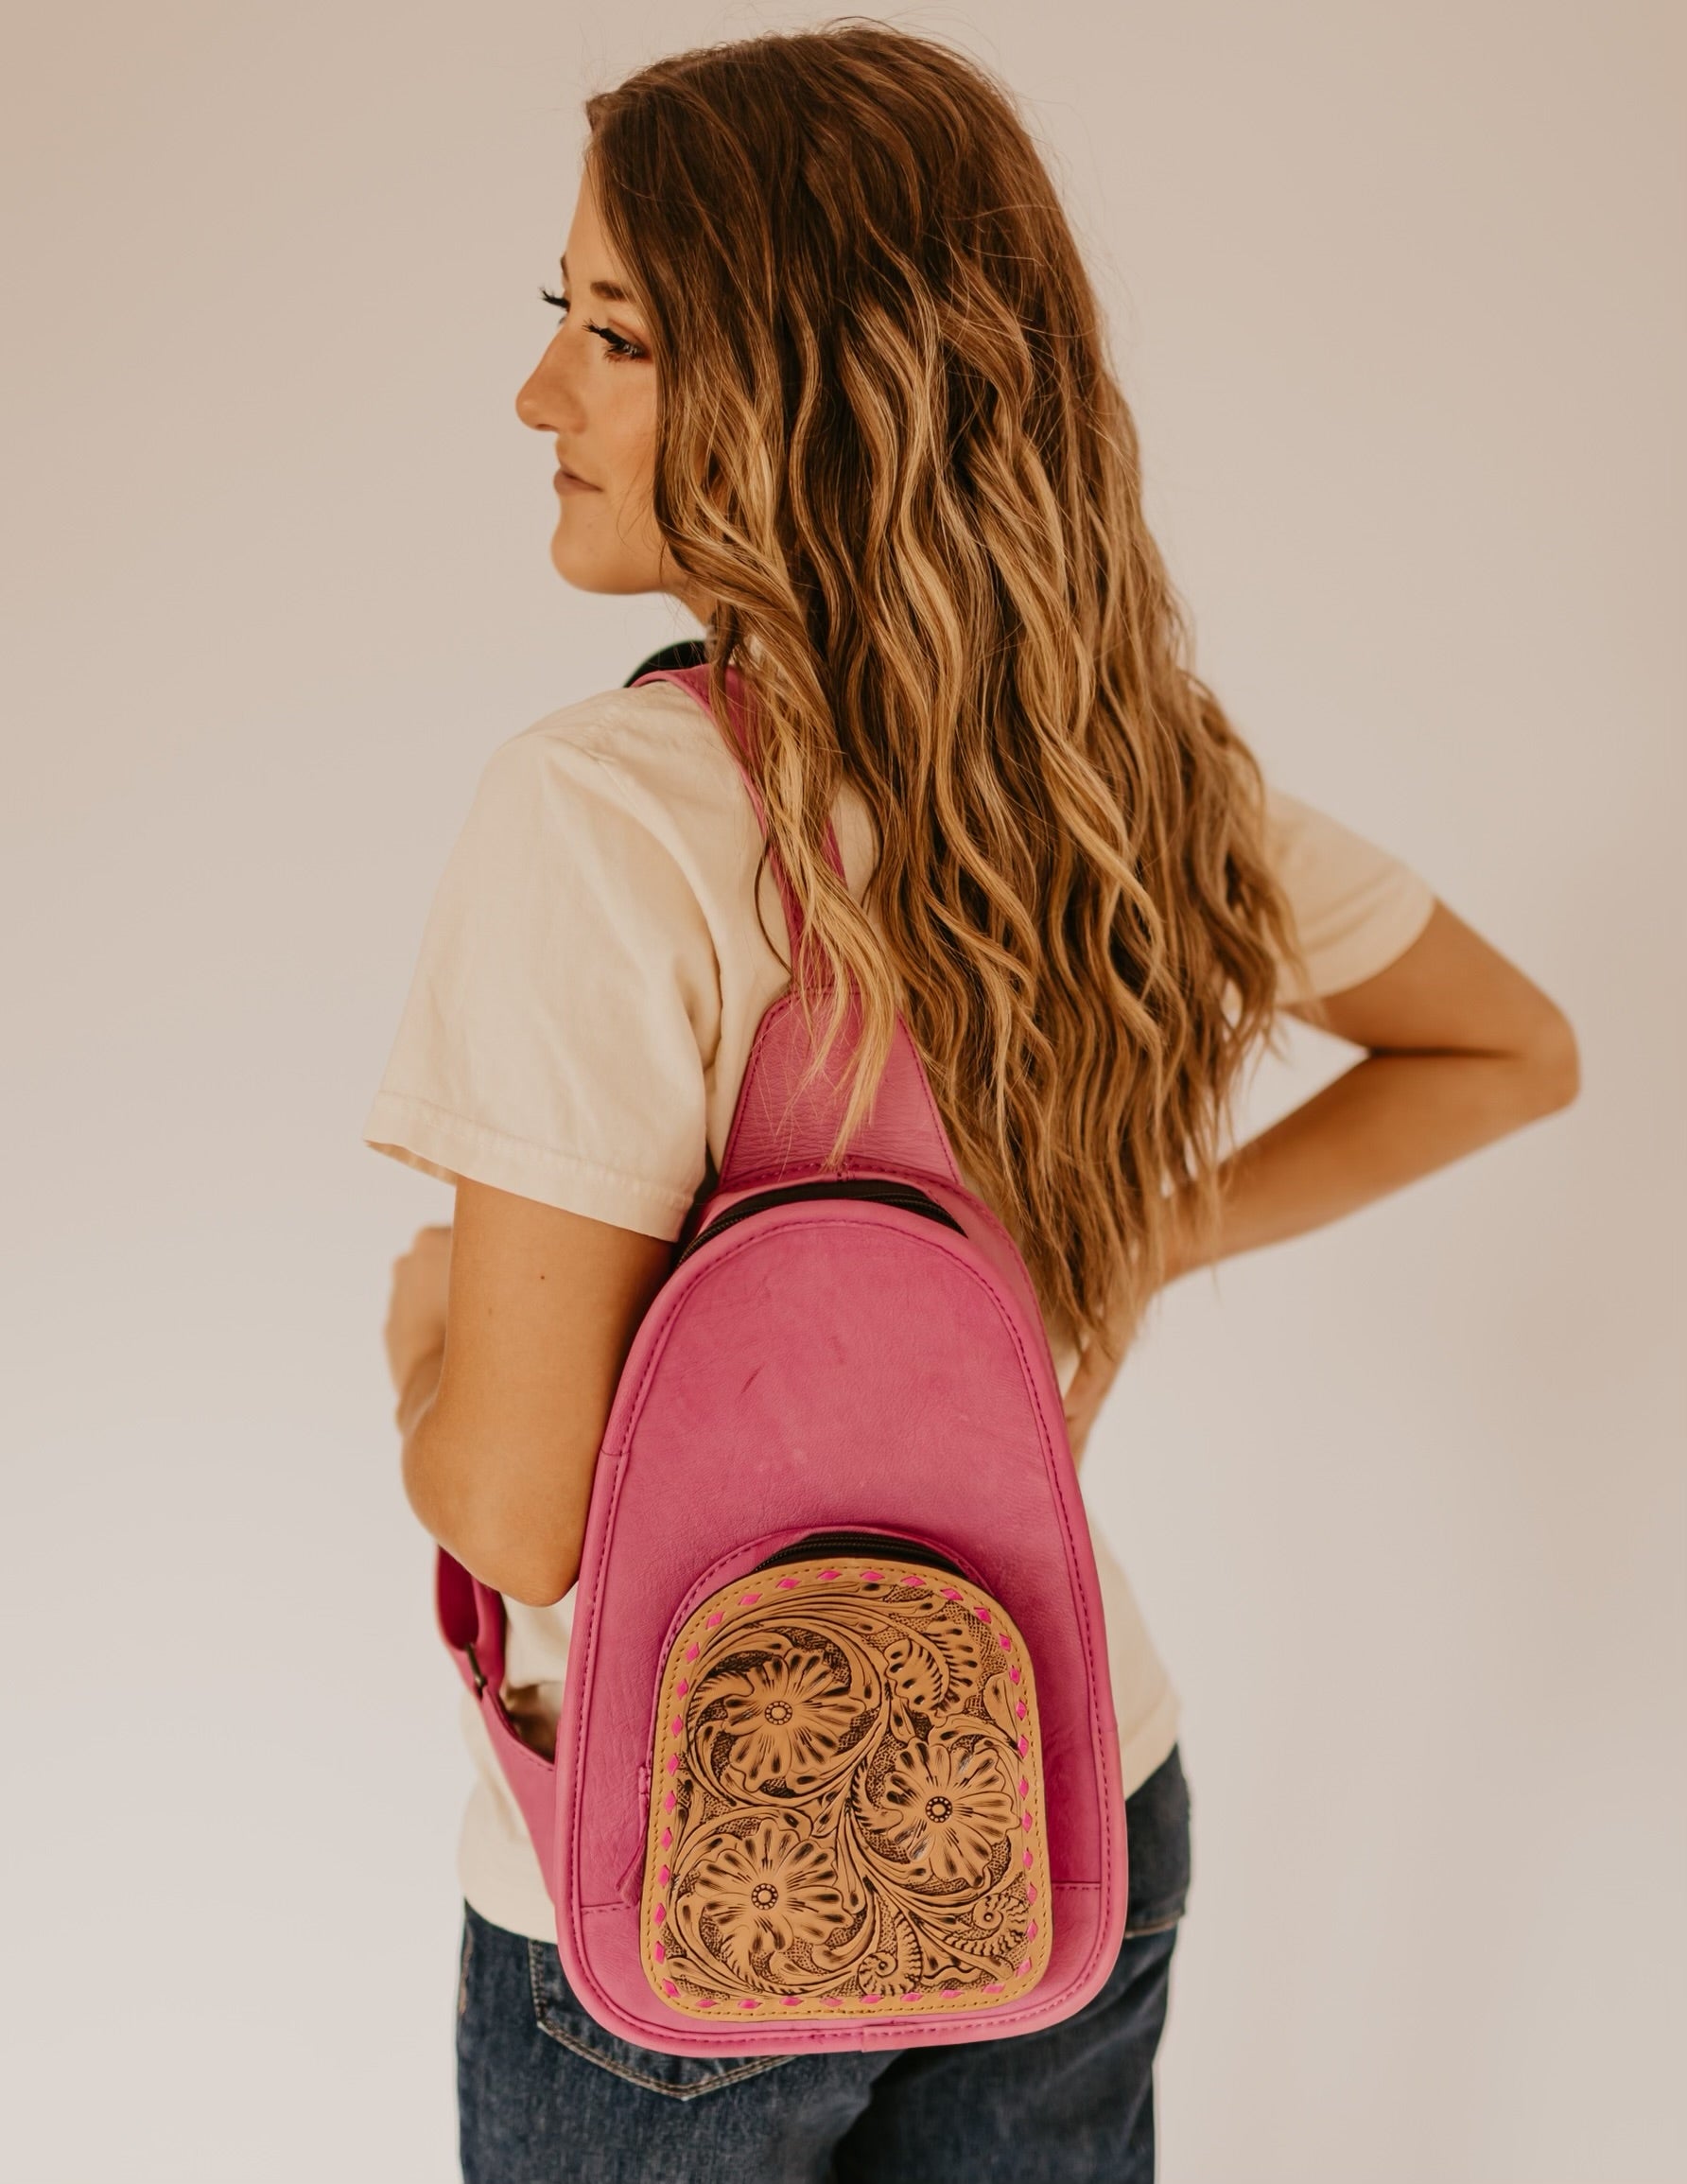 The Melleville Sling Bag in Pink